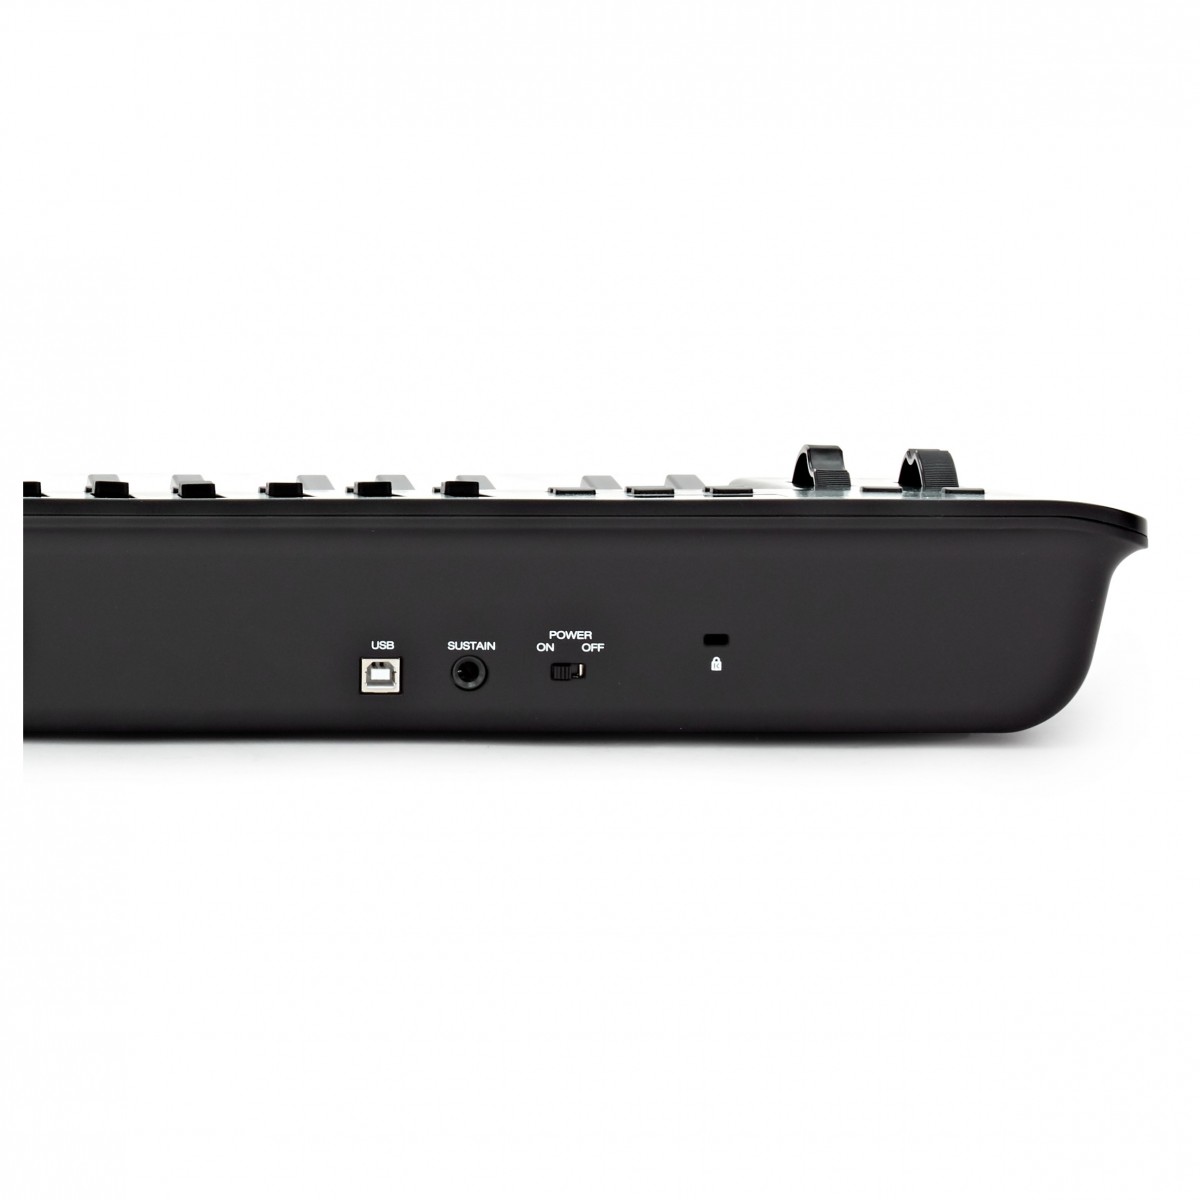 MIDI USB клавиатура M-Audio Oxygen 61 MKV